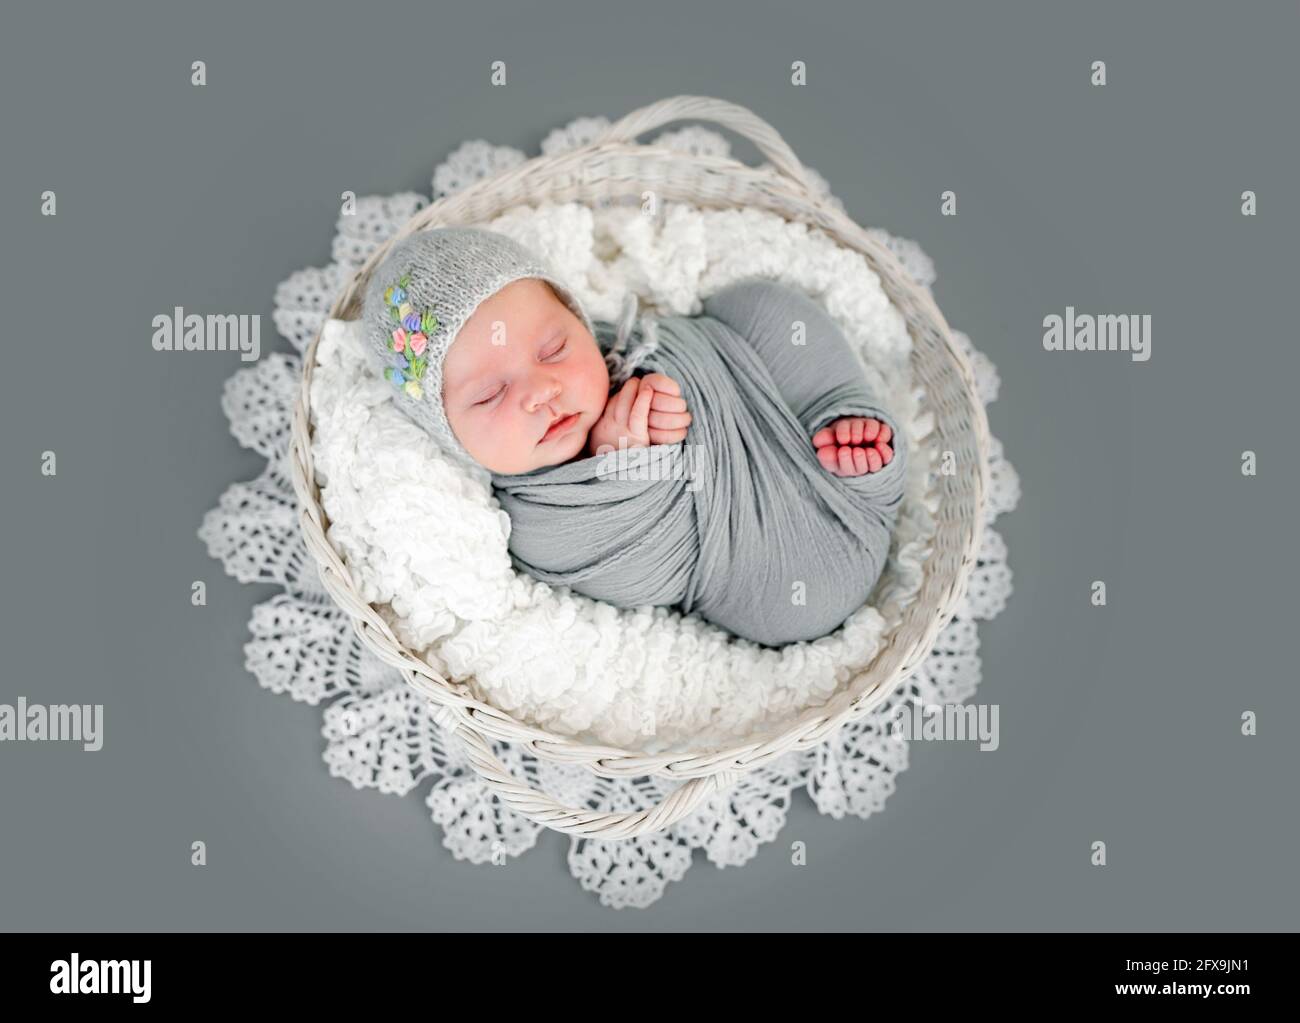 Newborn baby girl photoshoot Stock Photo - Alamy